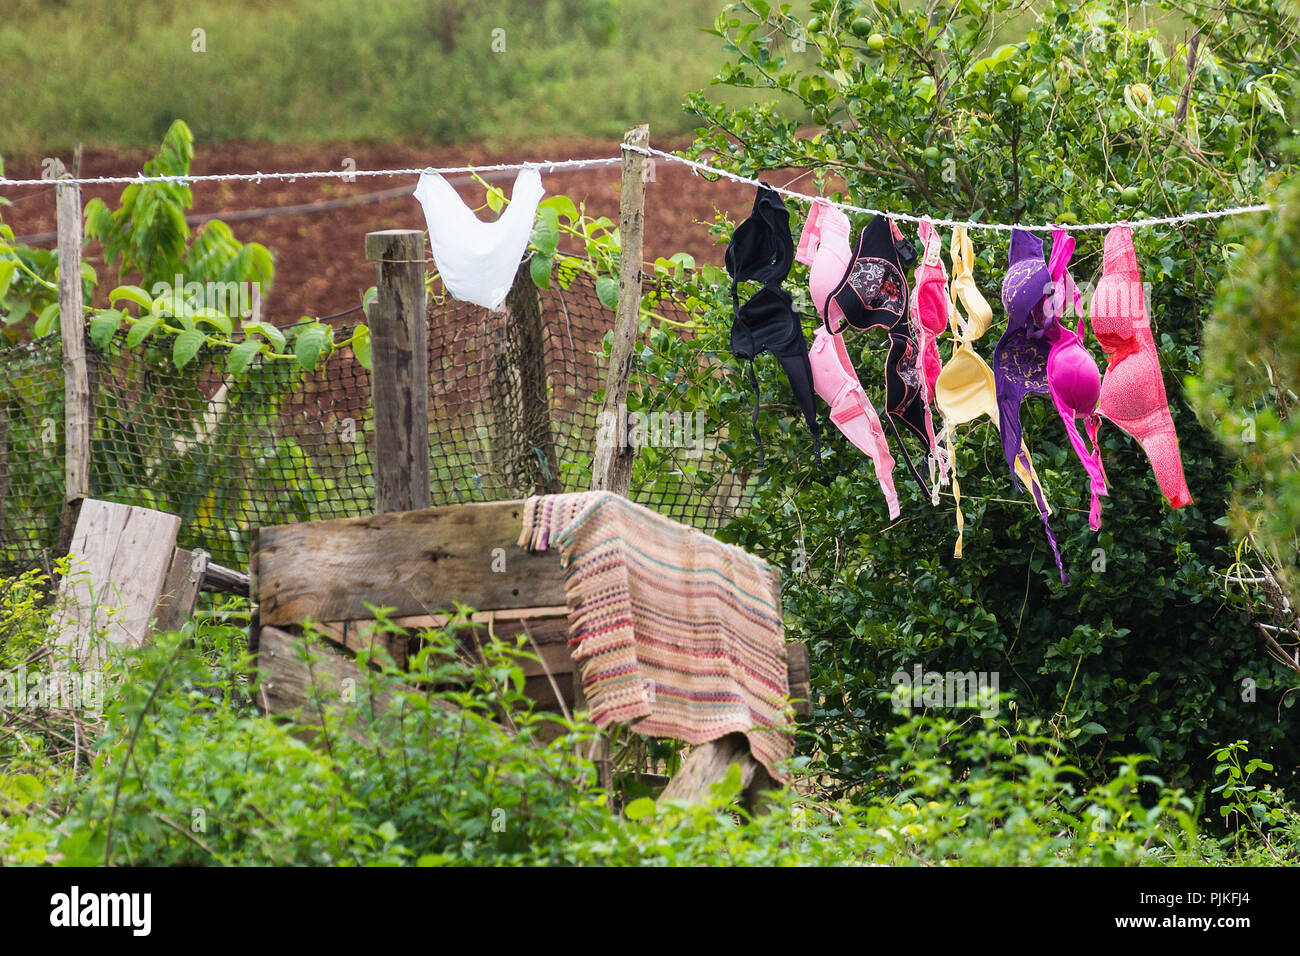 Cuba, Vinales Valley / Valle de Vinales, clothesline with colorful